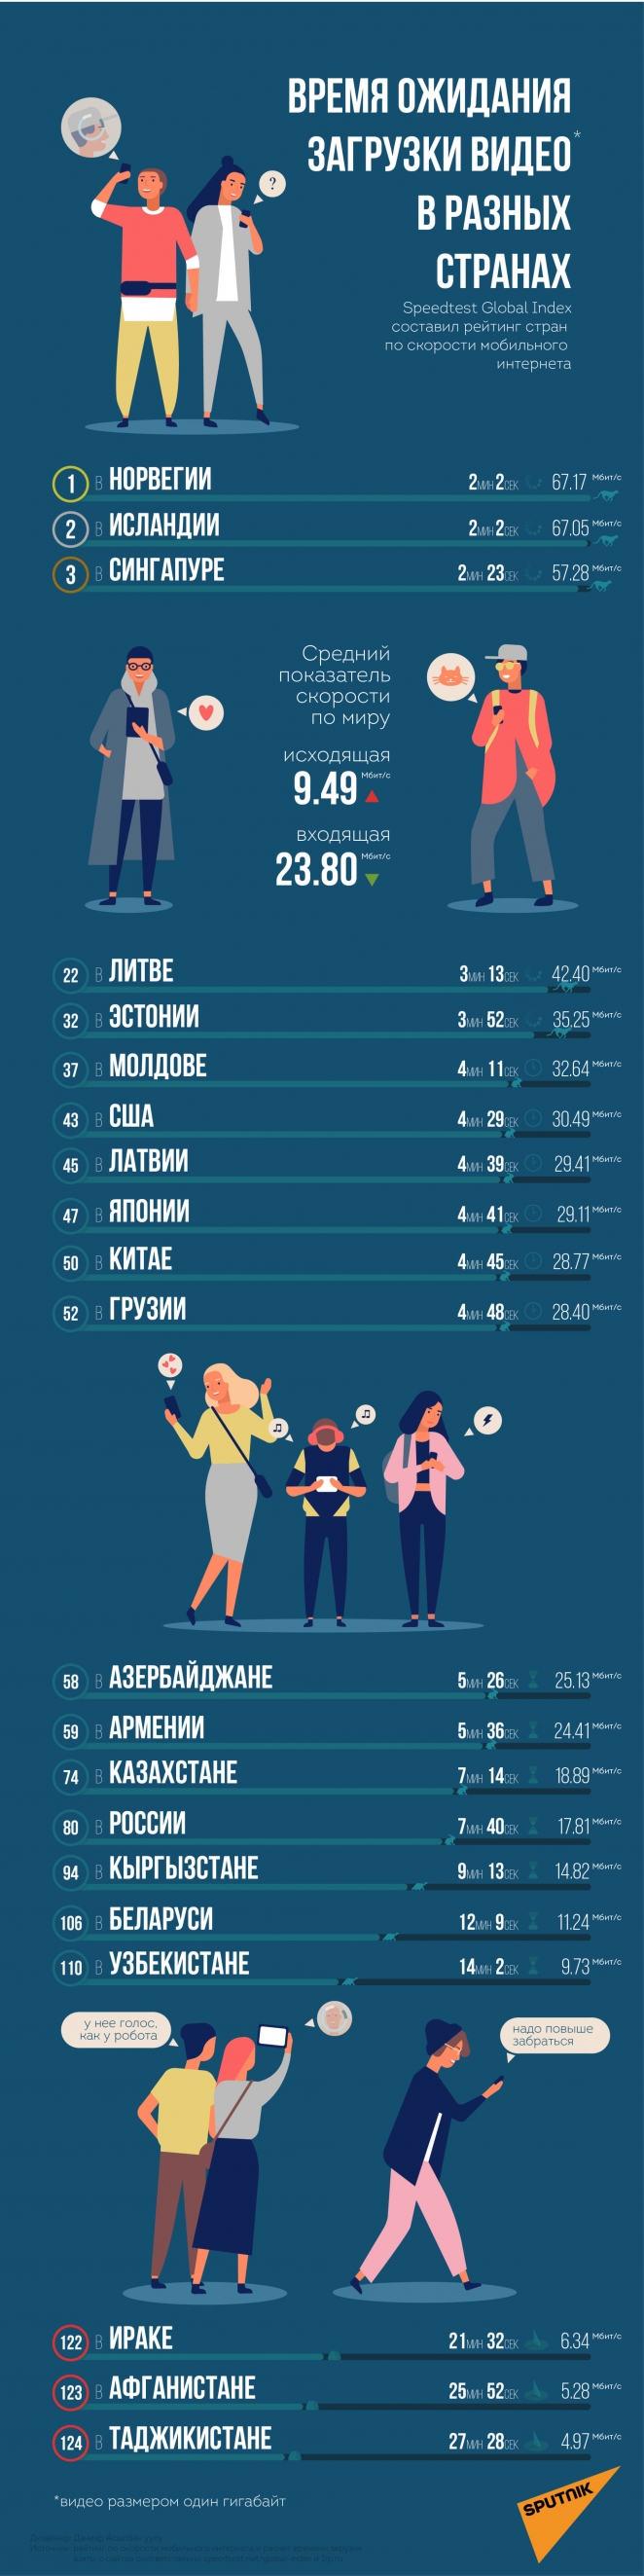 Беларусь по скорости загрузки видео из интернета заняла 106-е место в мире